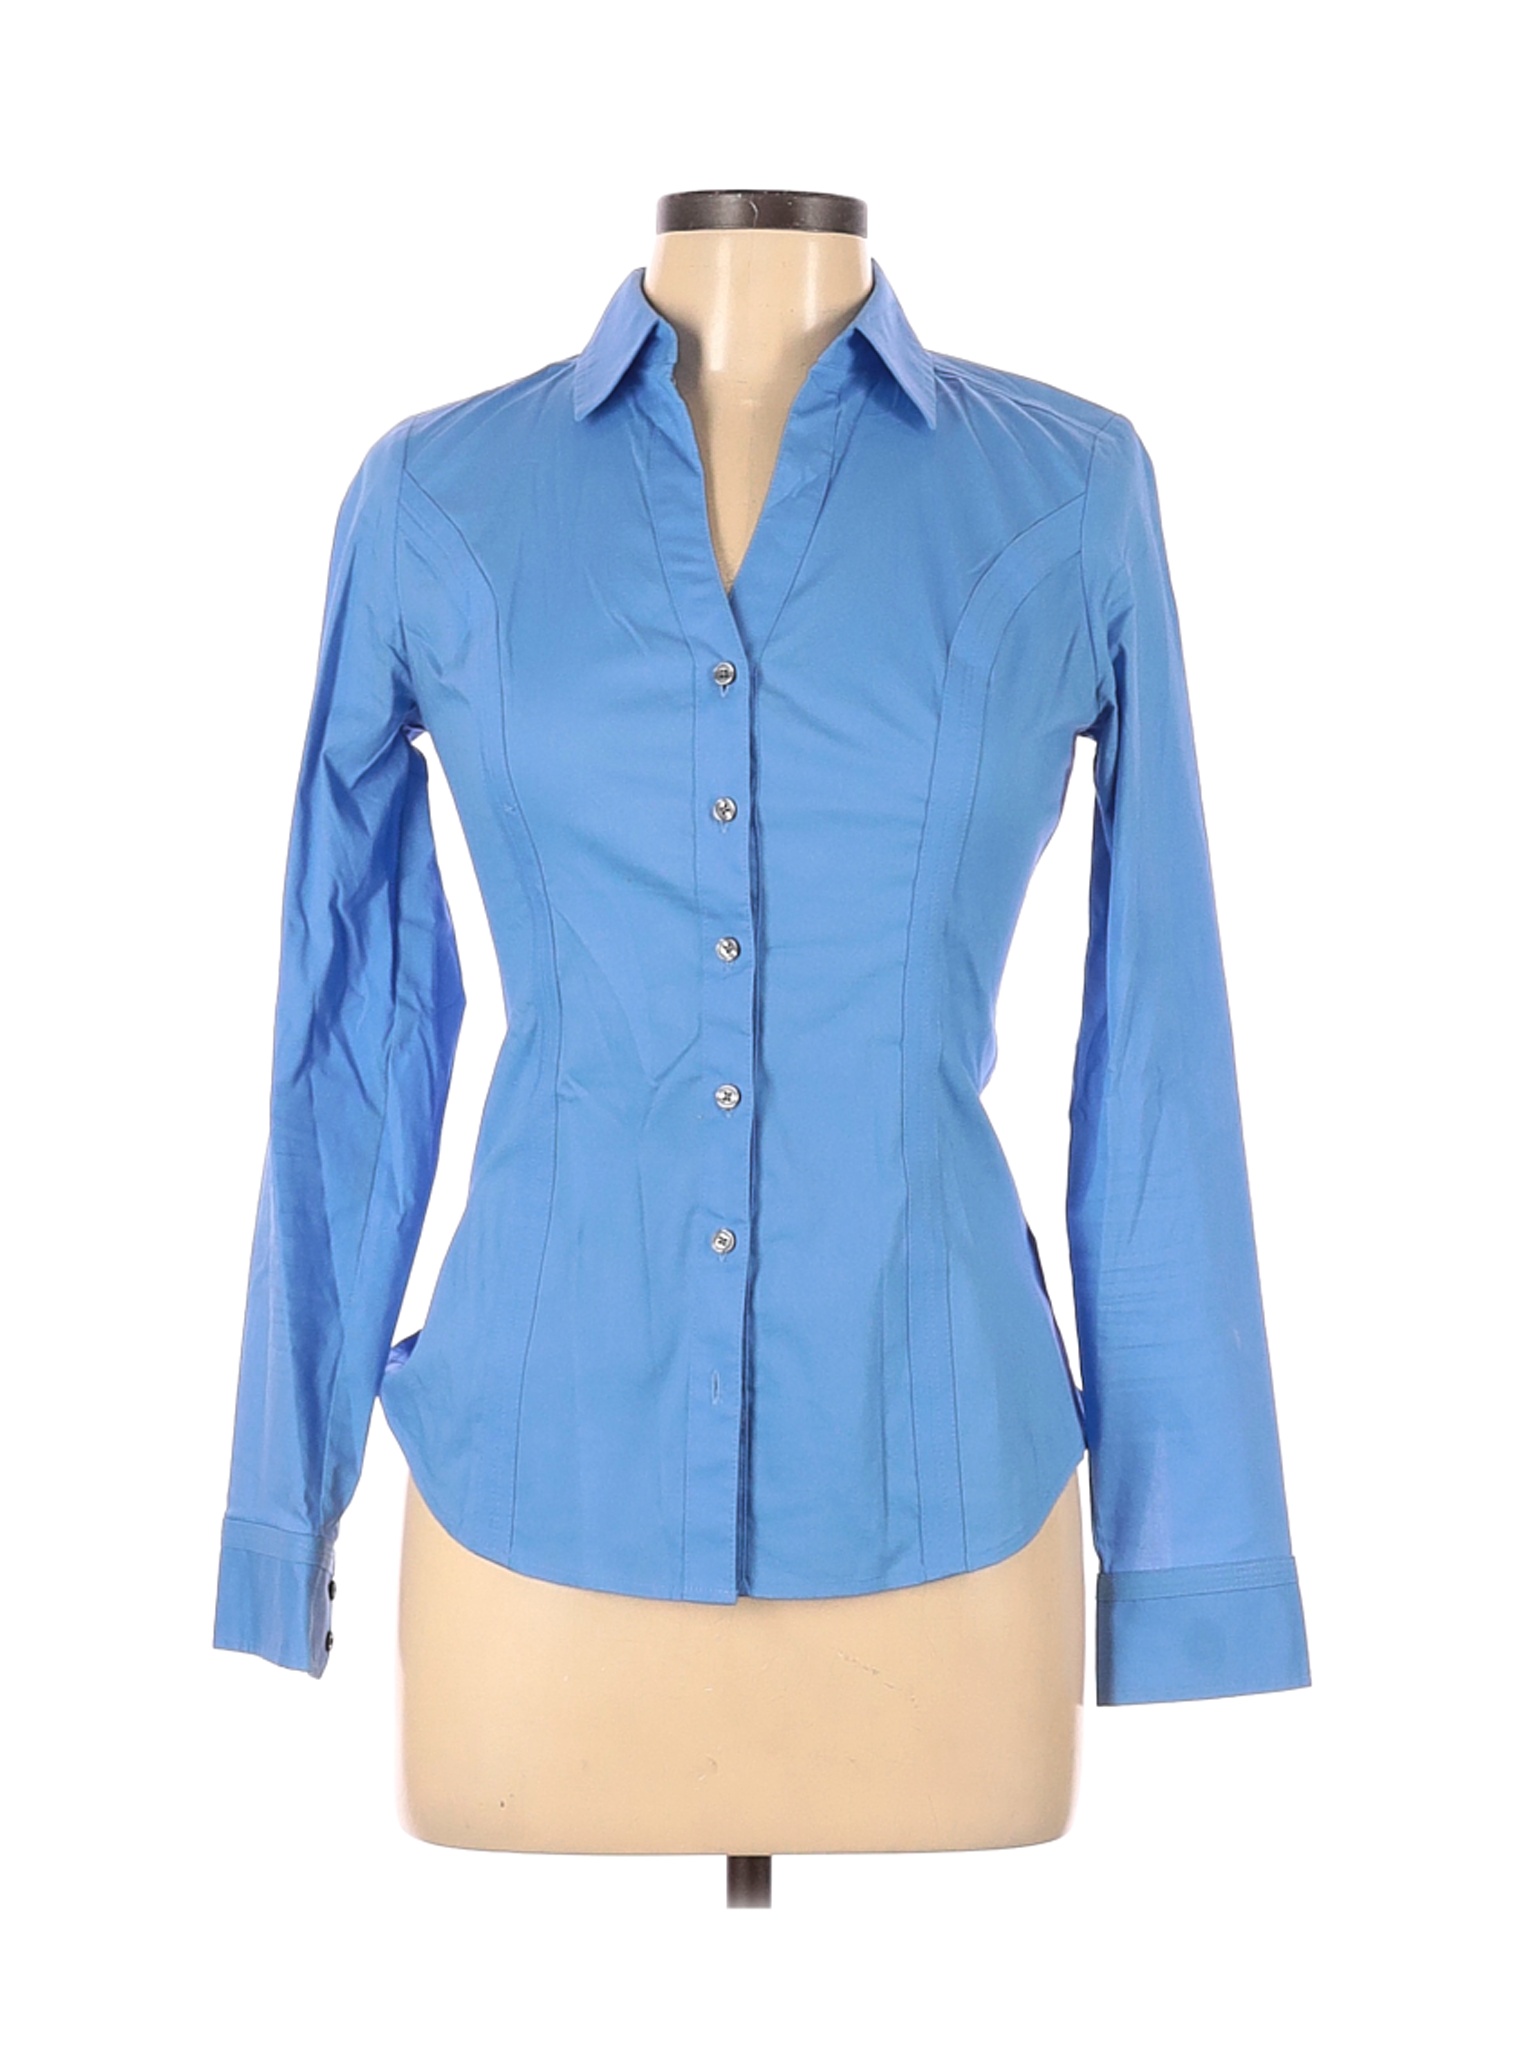 Express Women Blue Long Sleeve Button-Down Shirt XS | eBay